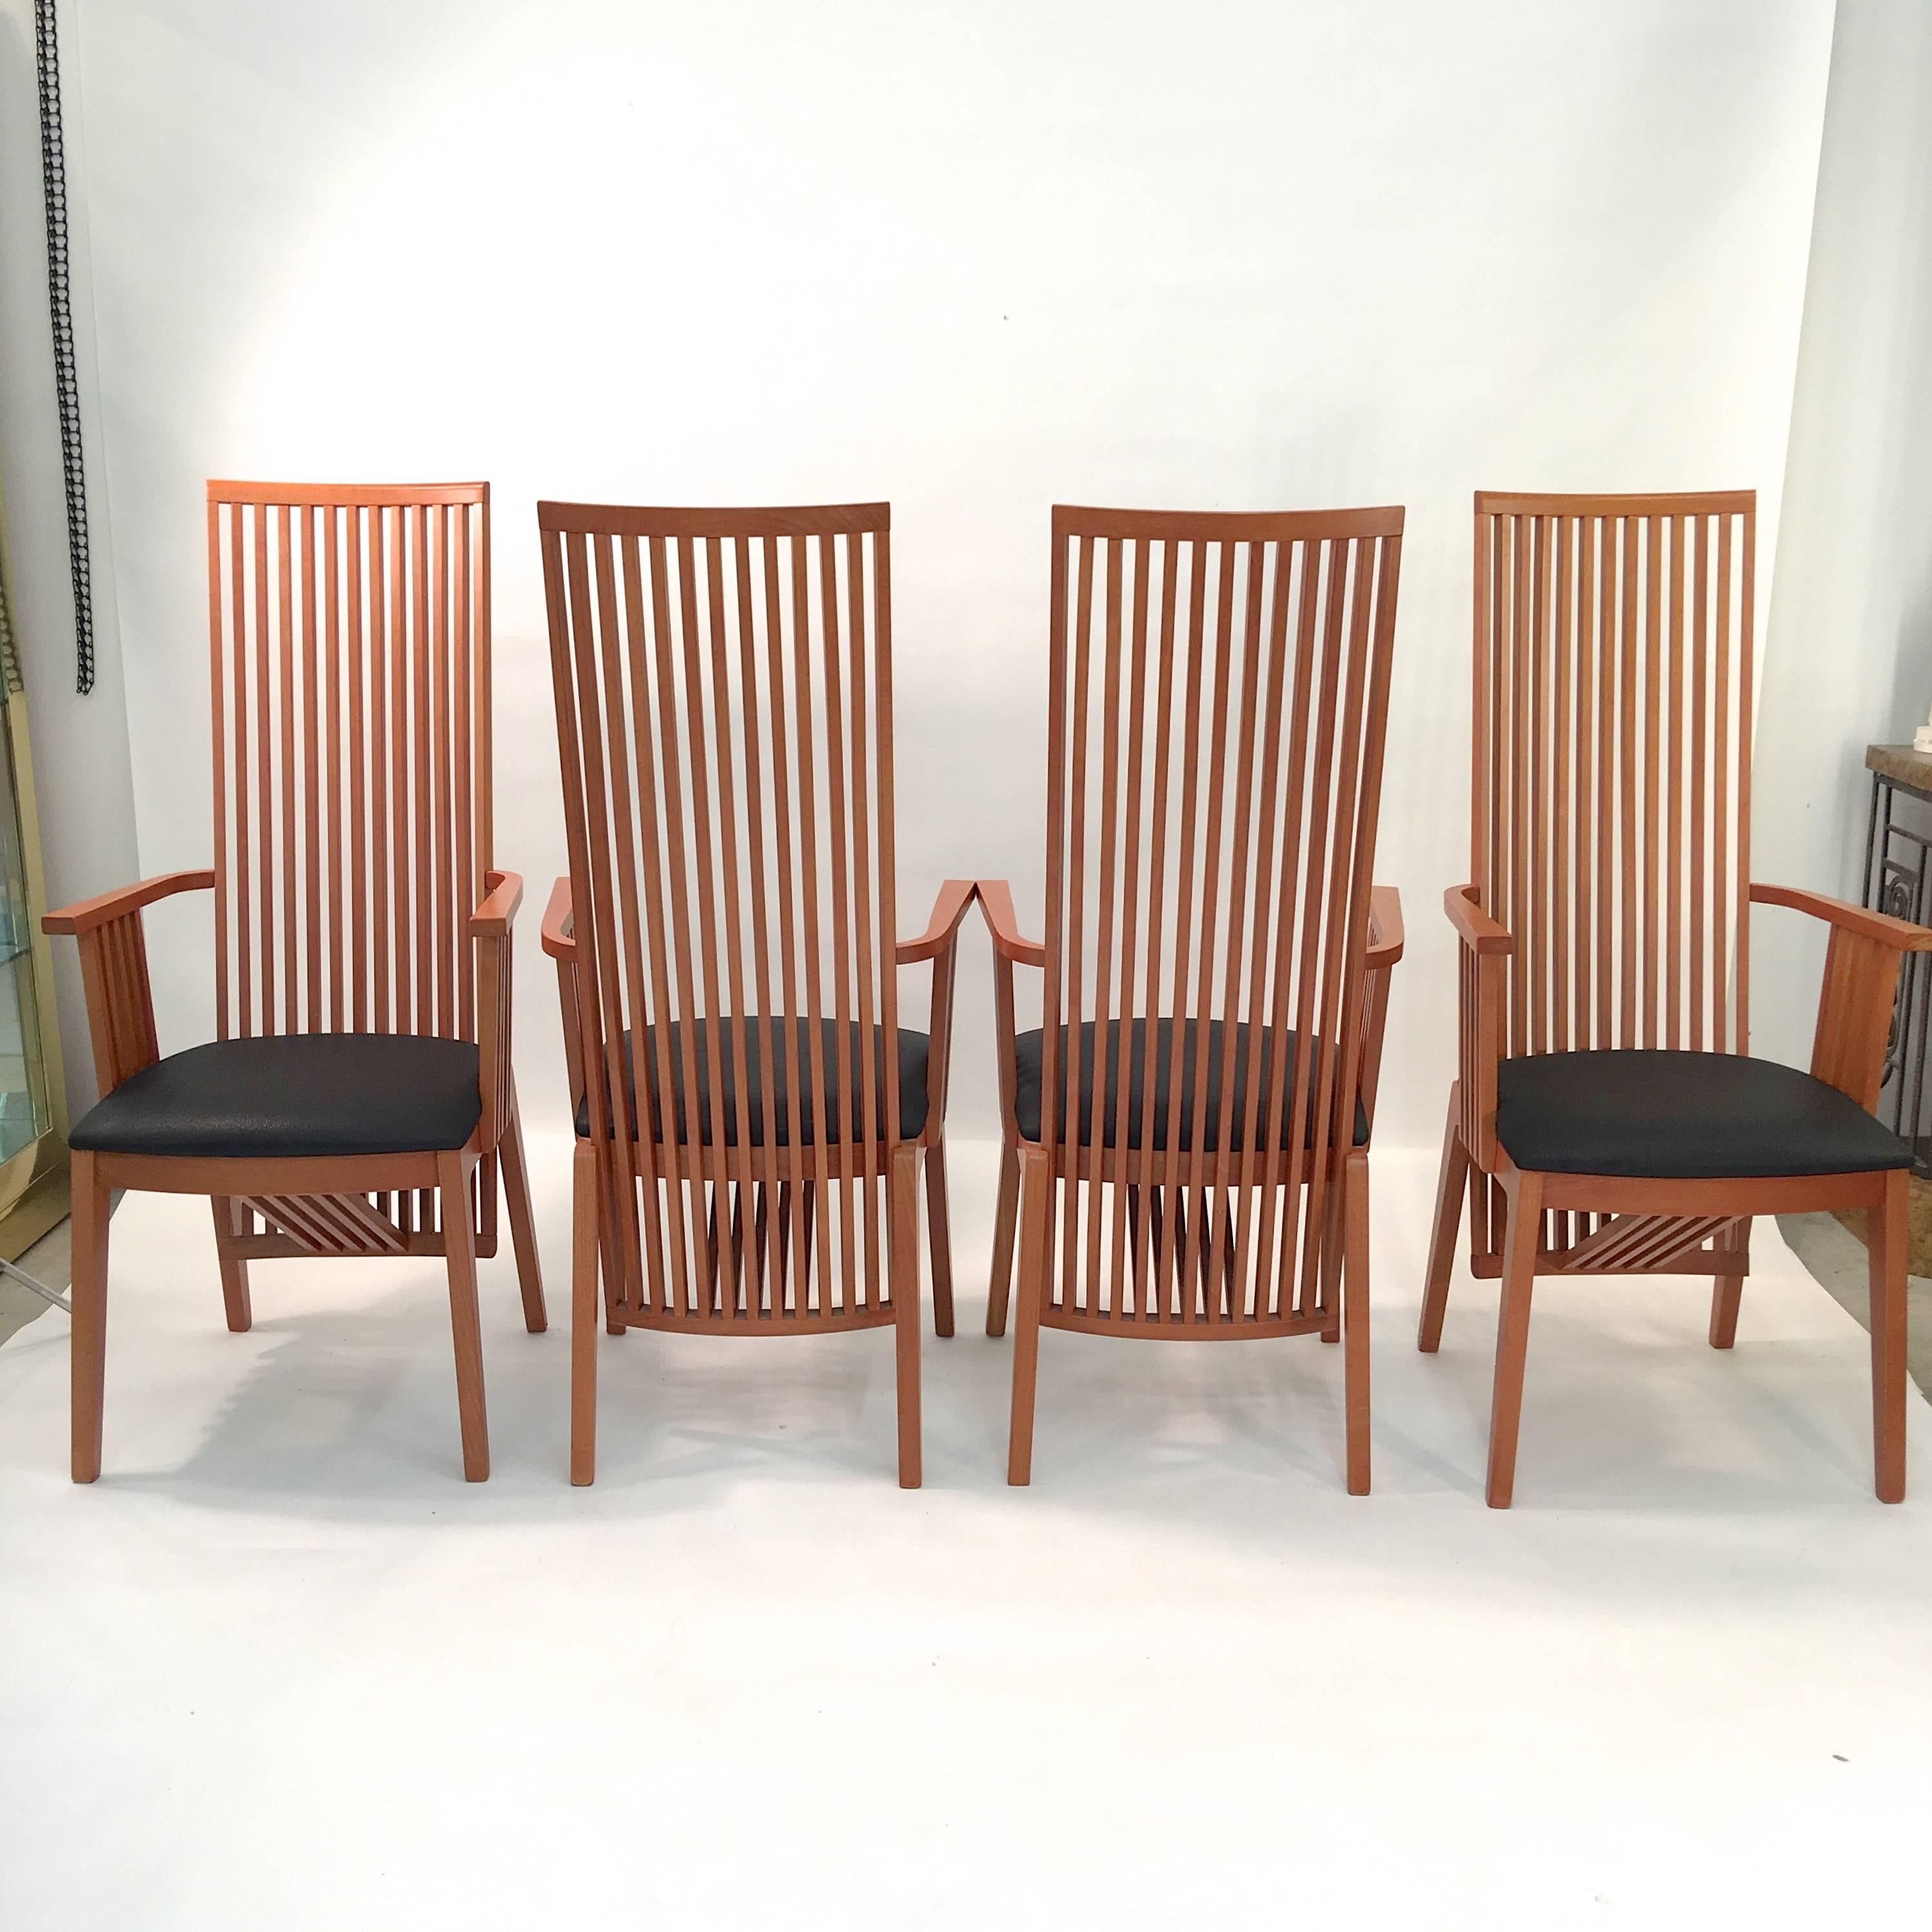 Ensemble de quatre fauteuils de salle à manger dans le style de Frank Lloyd Wright par A. Sibau produit à Manzano, Italie

Fabriqué en bois de hêtre avec une finition cerise et des sièges en cuir noir.

État impeccable.
